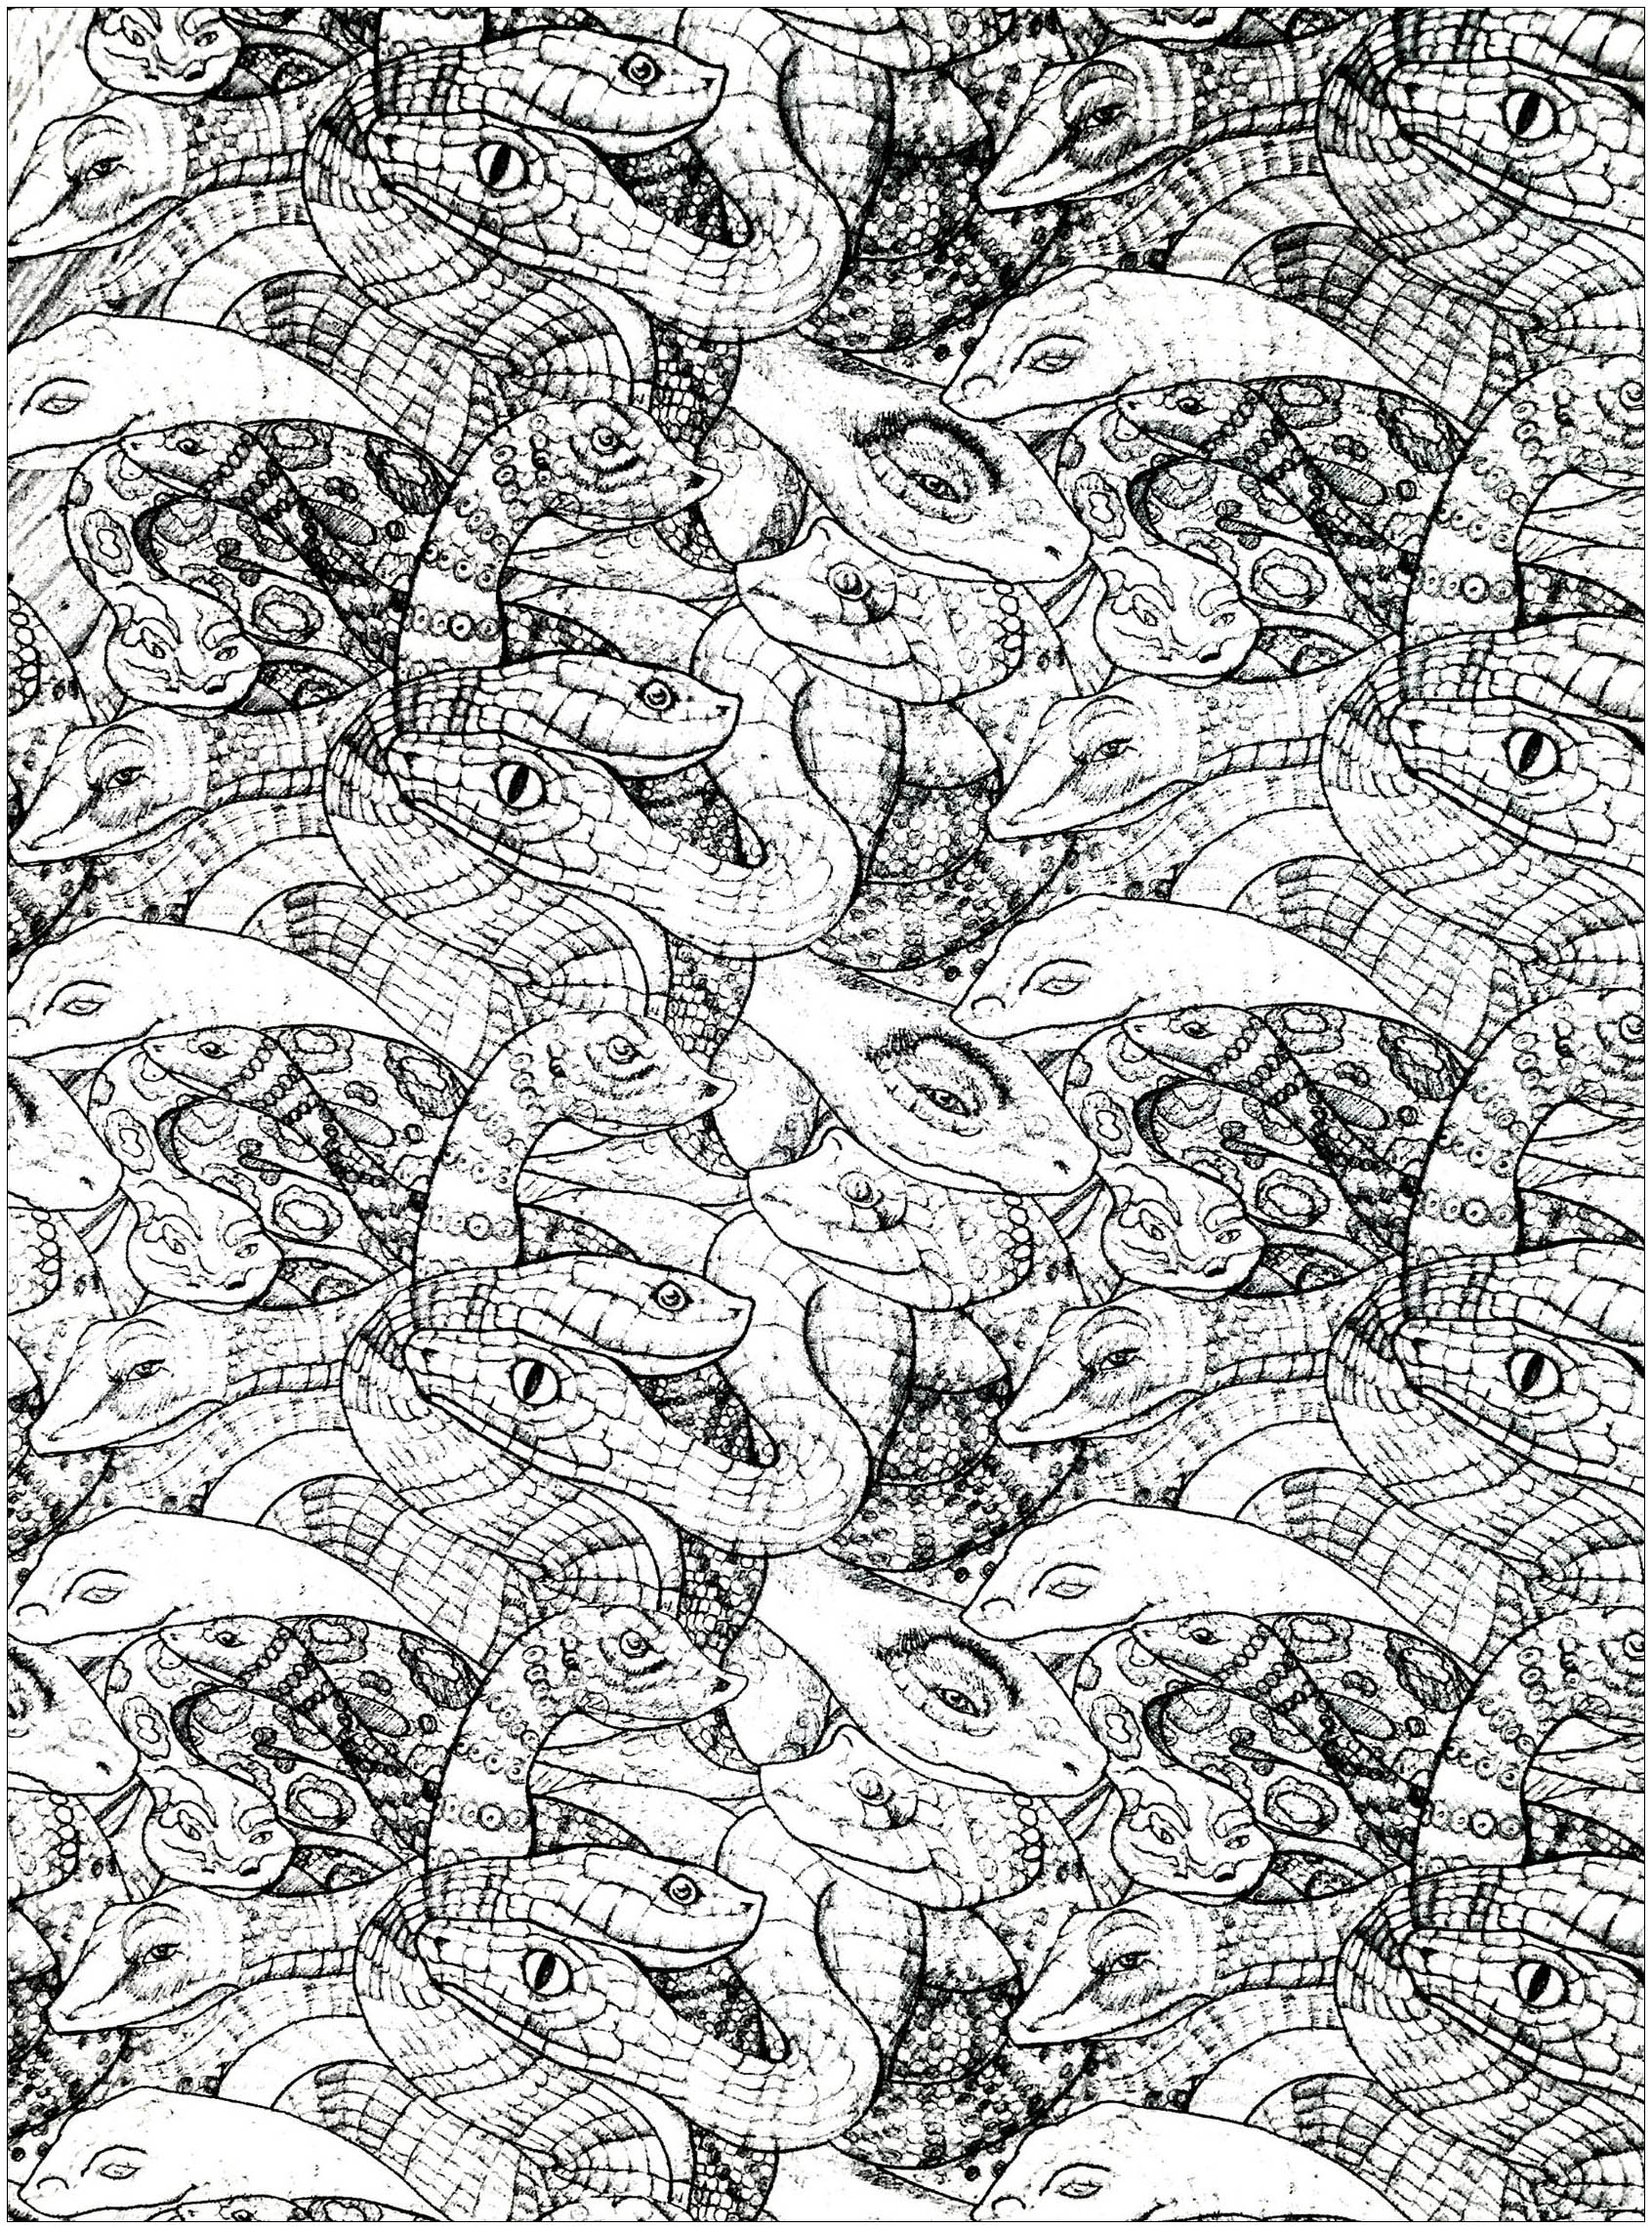 Desenho de serpentes emaranhadas e muito numerosas com escamas desenhadas de forma precisa e realista